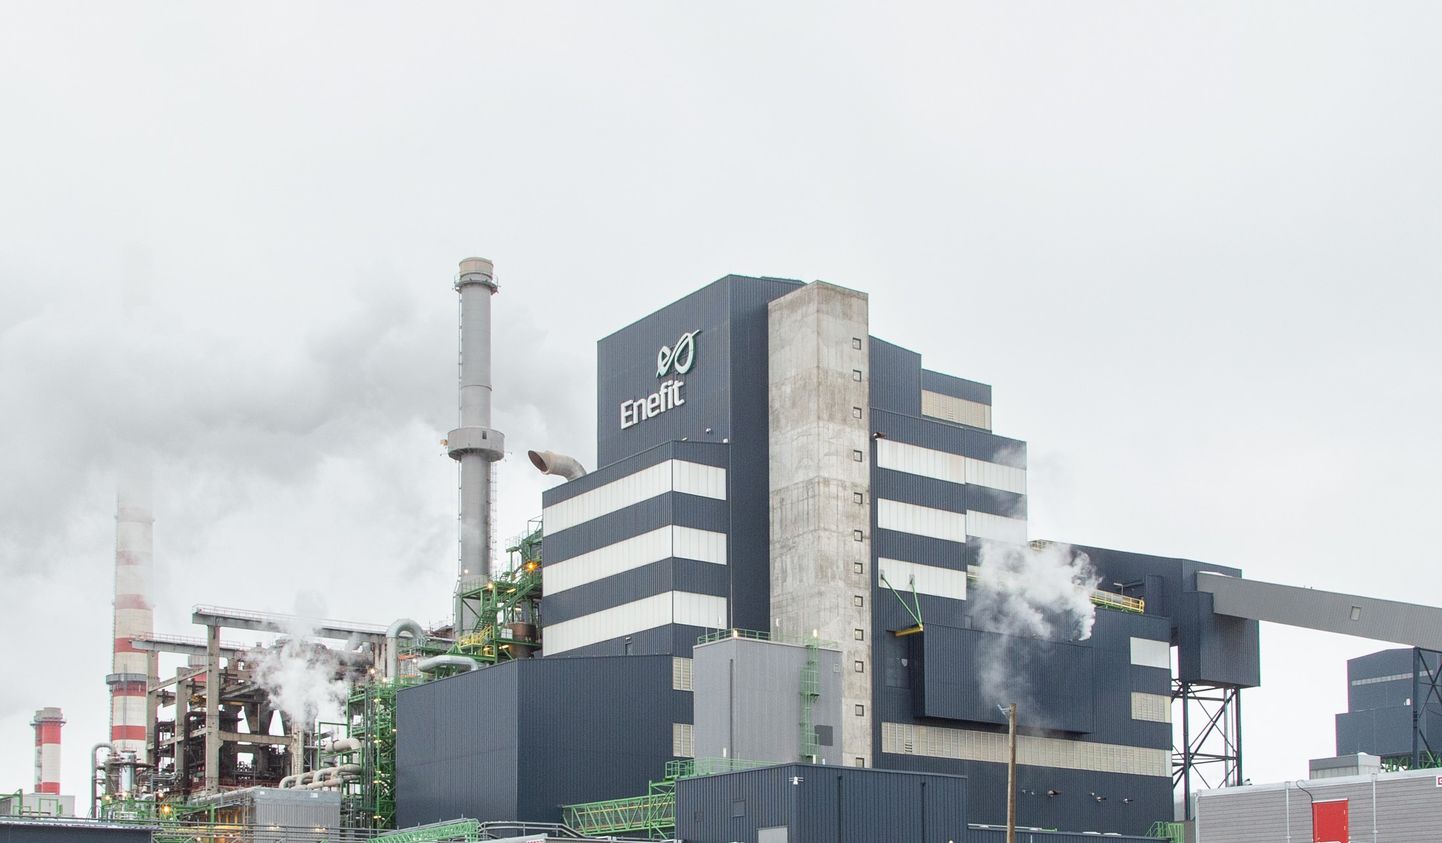 Повышение налогов на загрязнение увеличит себестоимость производства масла на Аувереском заводе масел.